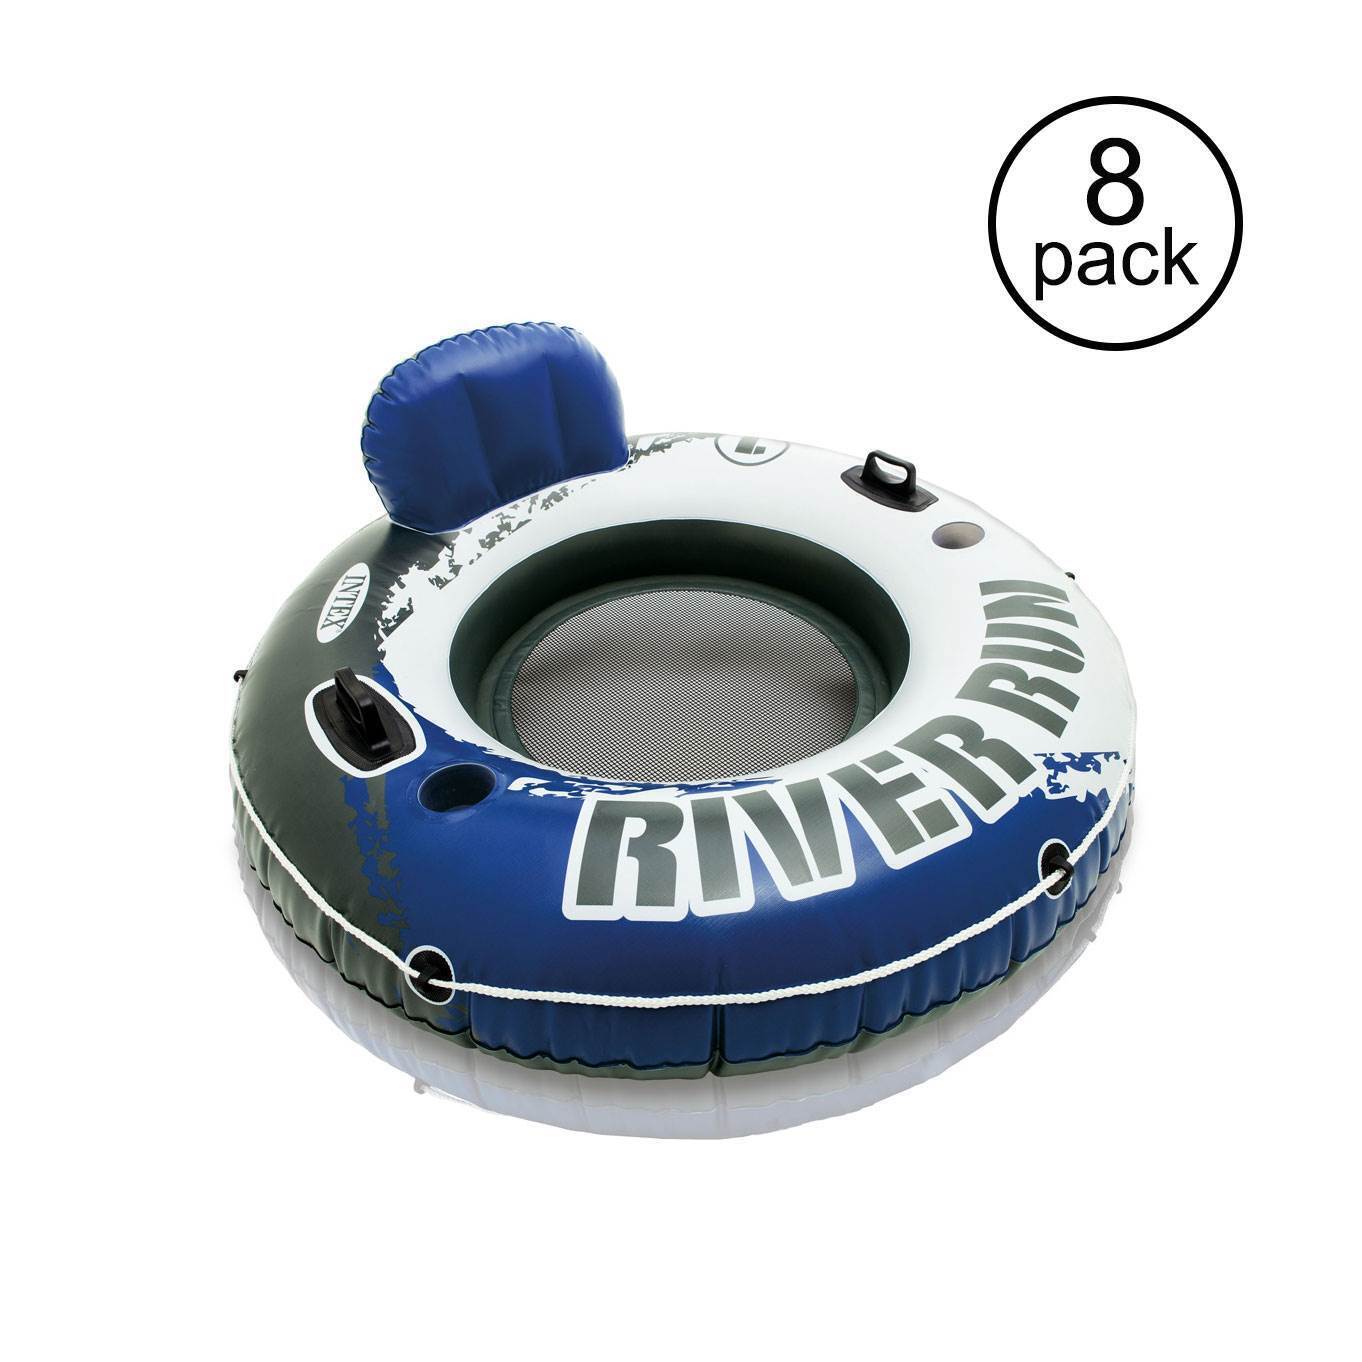 Intex River Run 1 Person Inflatable Floating Tube Lake/Pool/Ocean Raft (8 Pack)